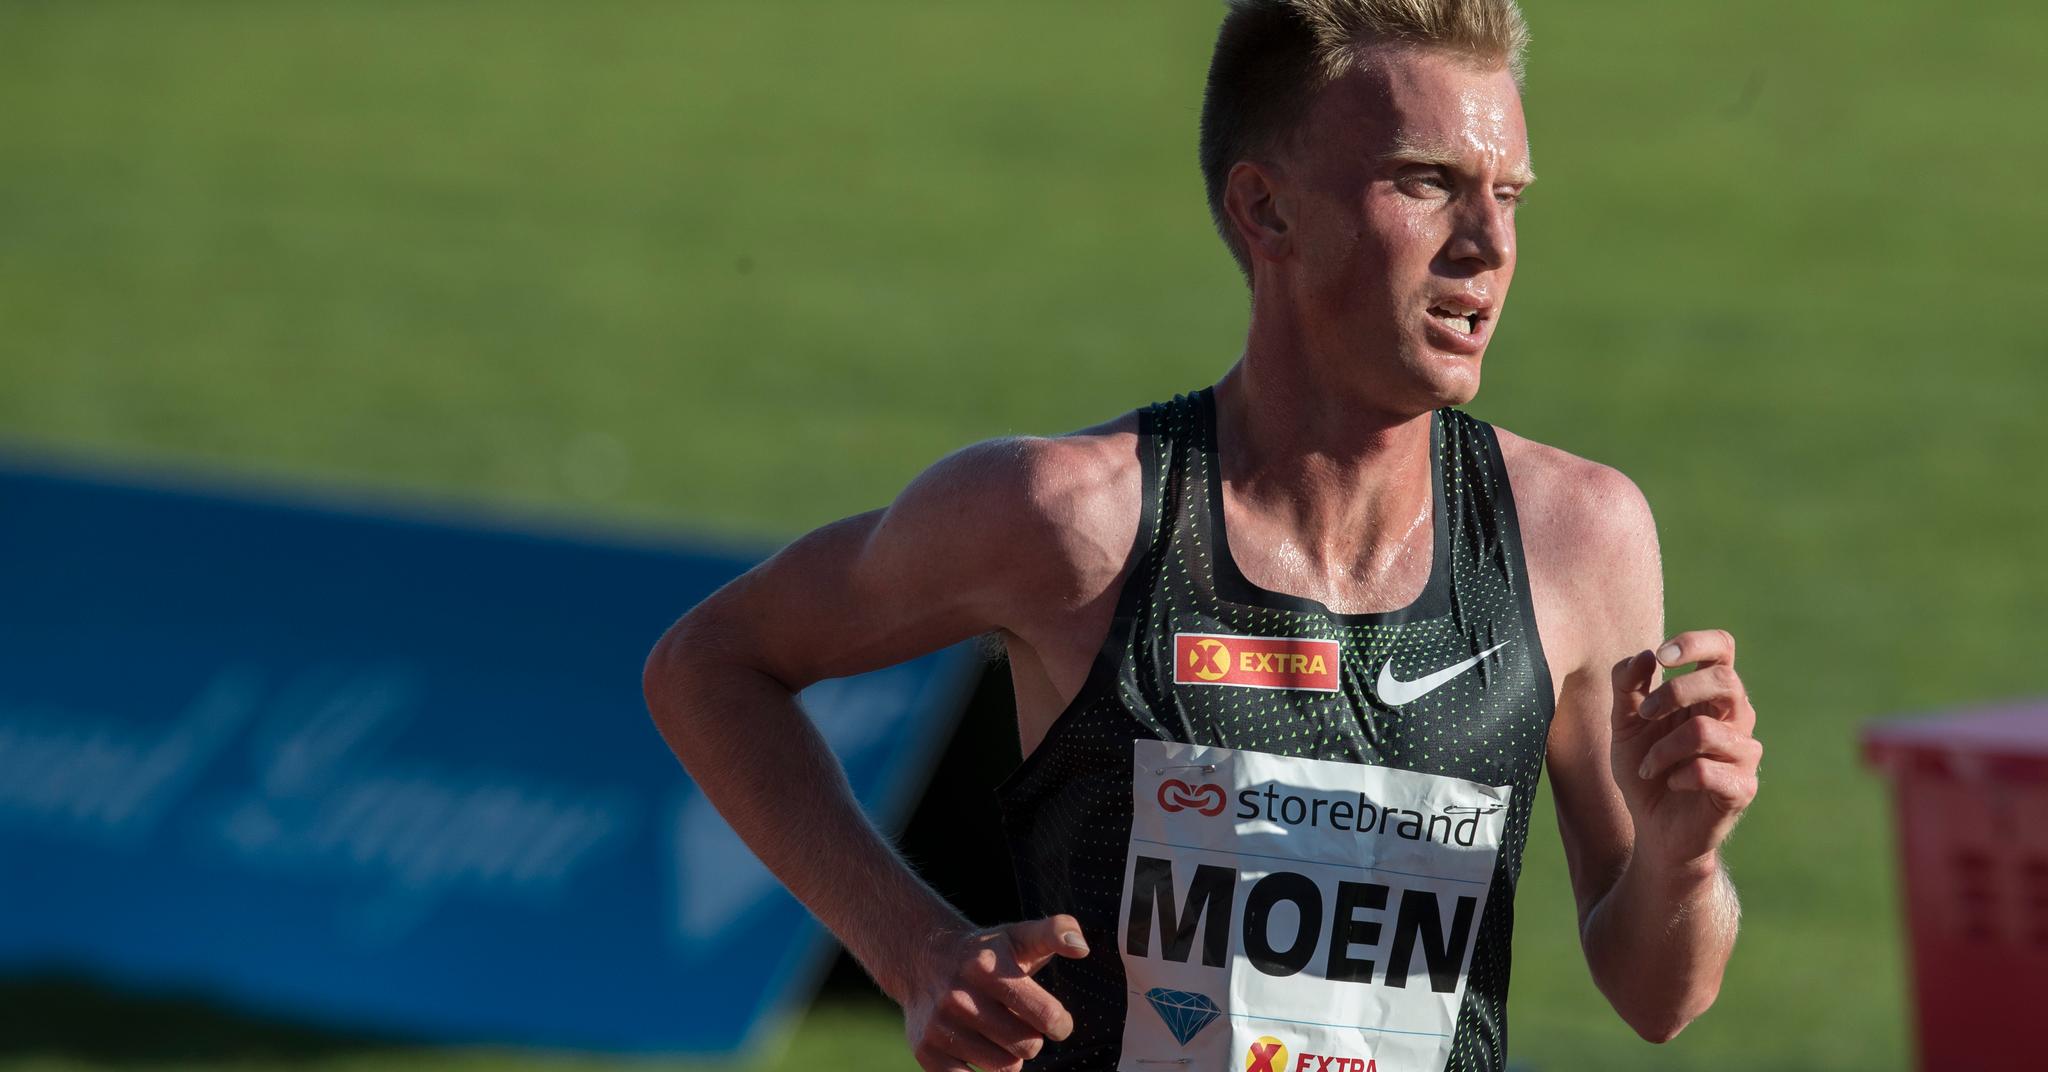 Mislykket rekordforsøk: Sondre Nordstad Moen ønsket å sette norsk rekord på 10000 m under Bislett Games, men kroppen fungerte ikke for langdistanseløperen. Søndag skal han løpe maraton i EM. Oppkjøringen har vært alt annet enn problemfri for trønderen.  